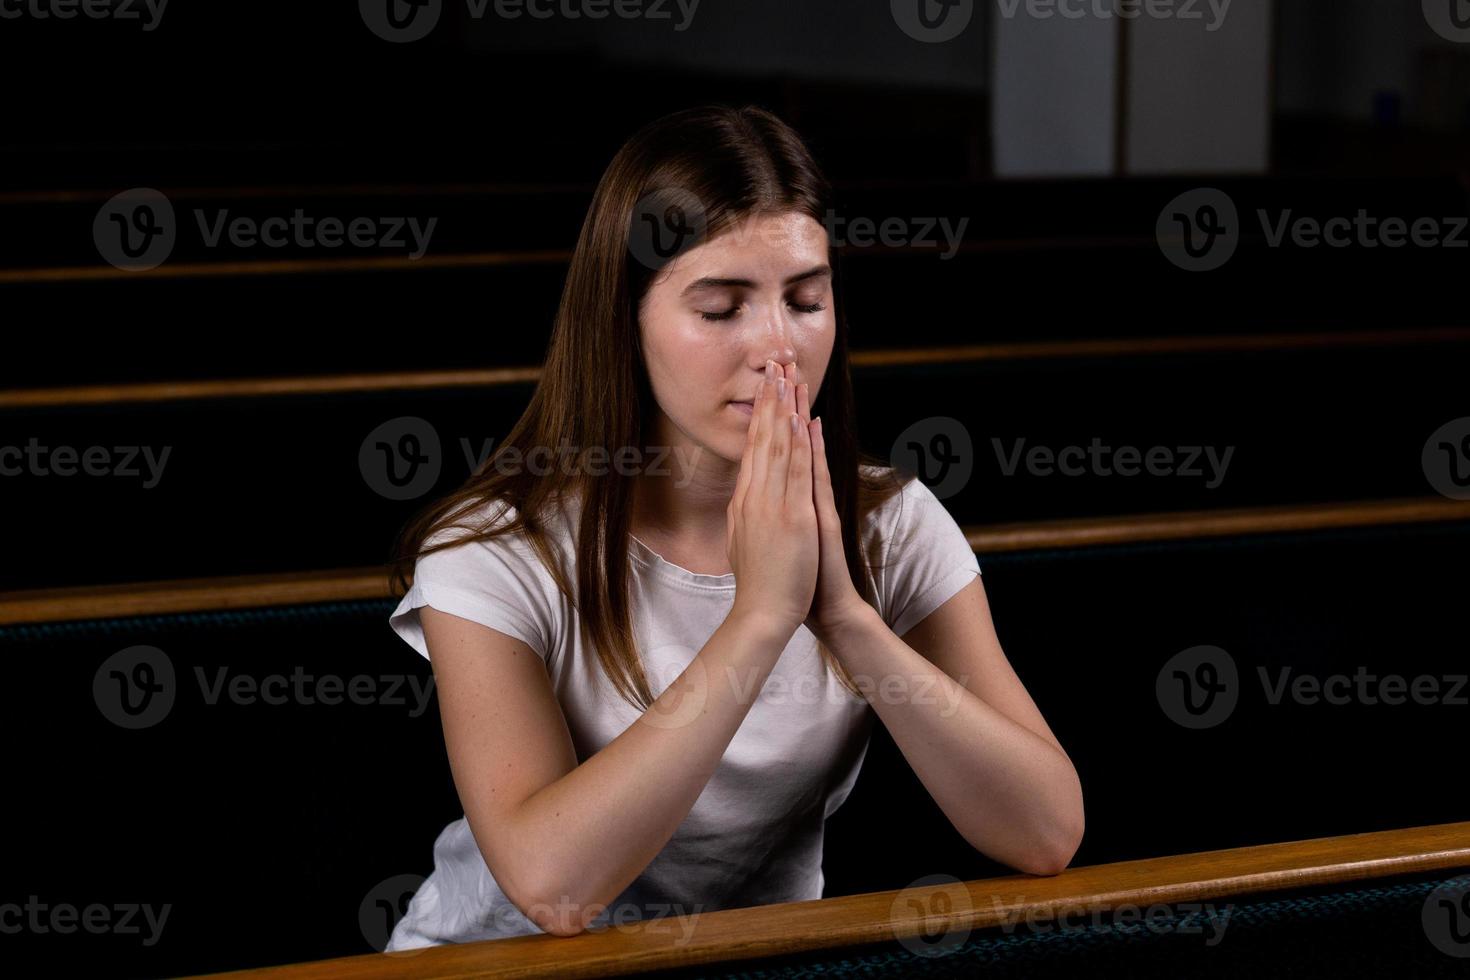 een christelijk meisje in een wit overhemd bidt met nederig hart in de kerk foto